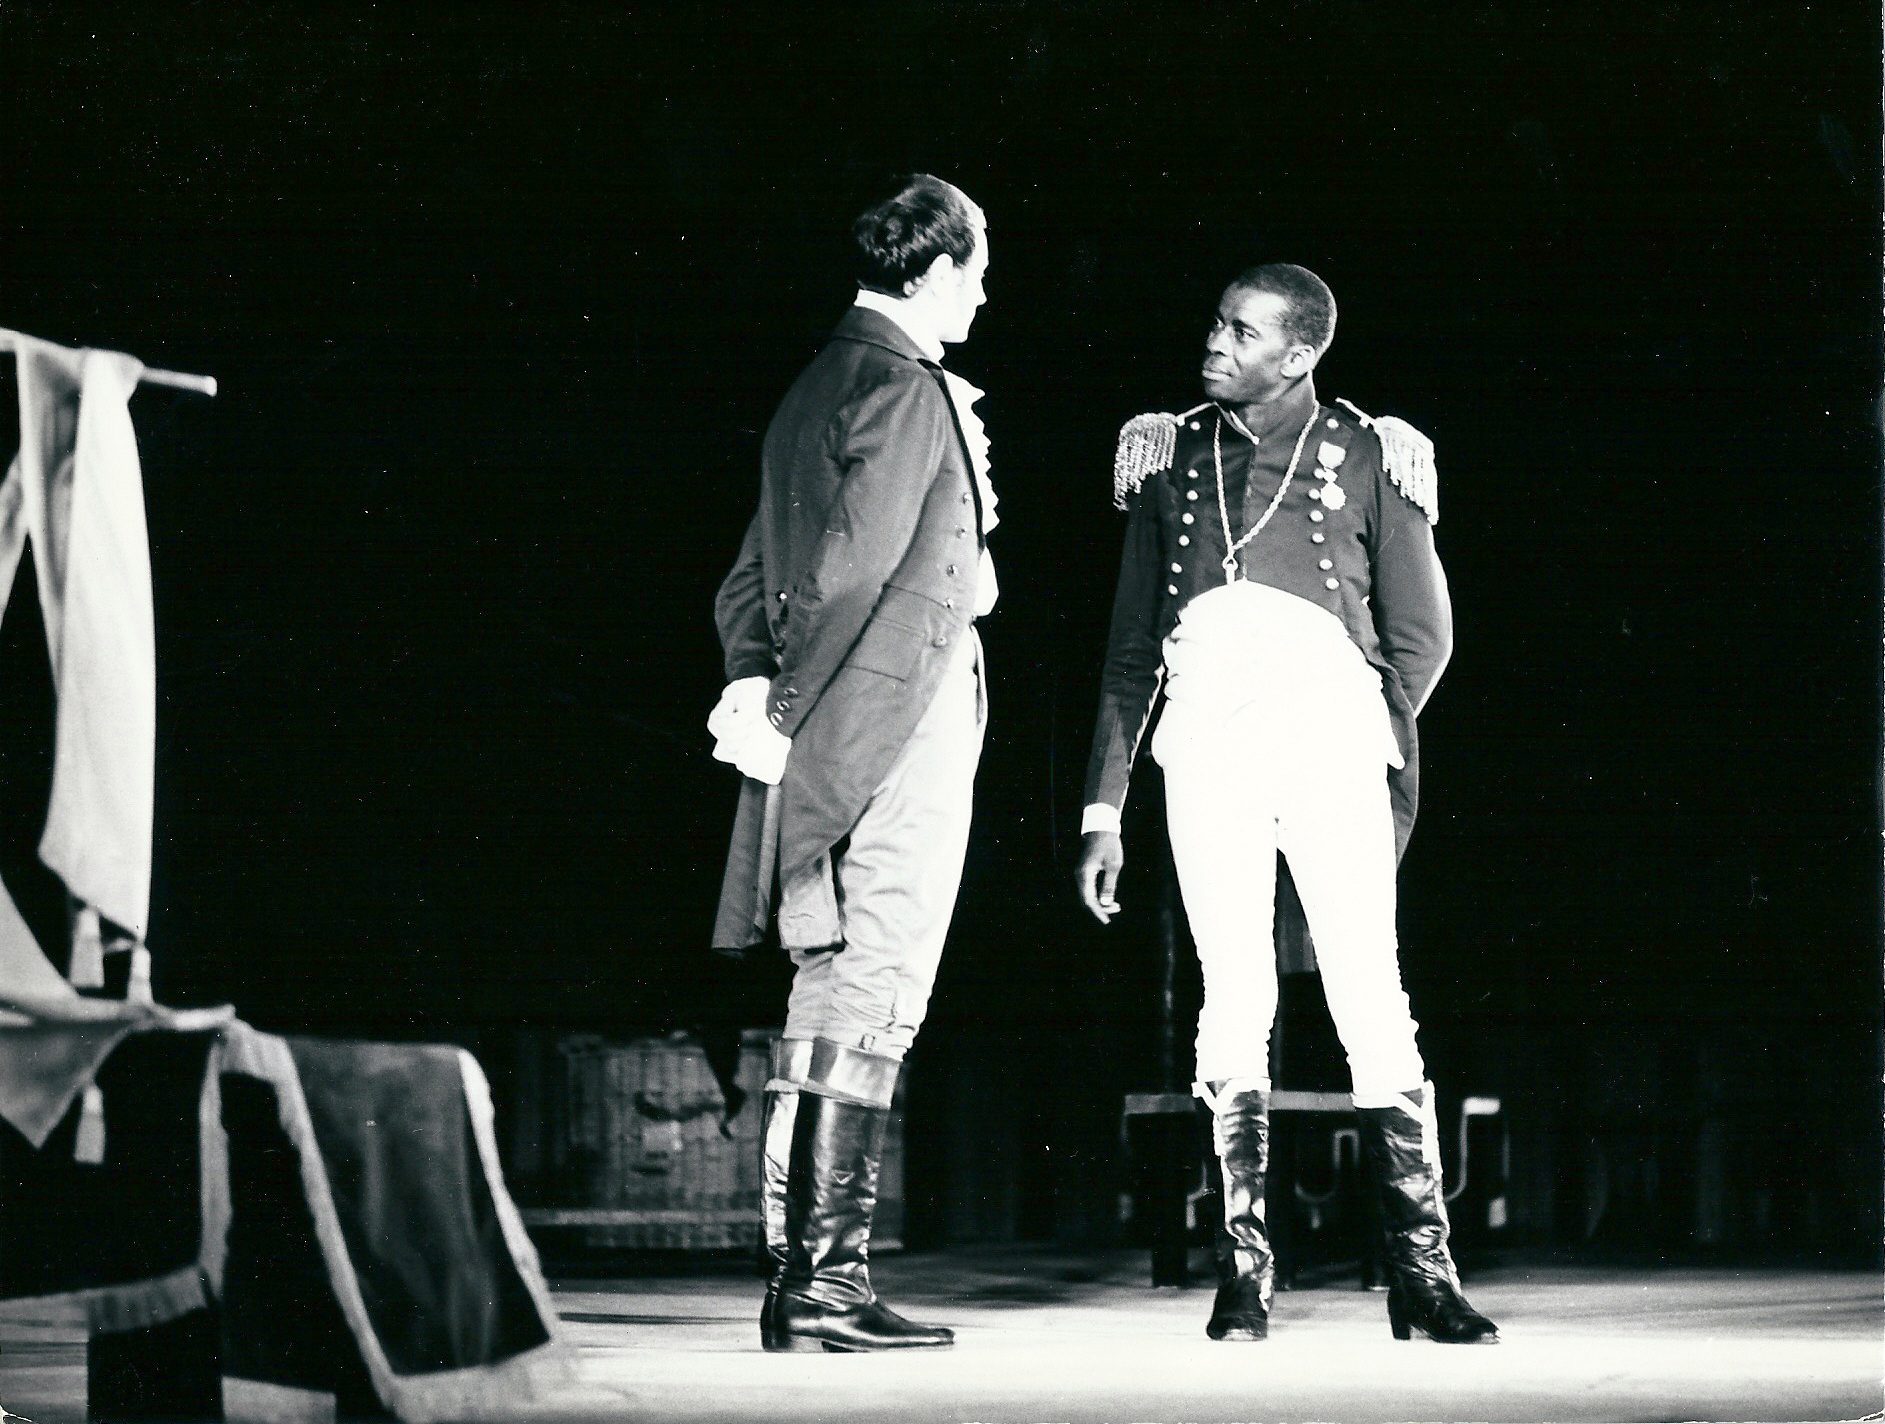 The play La Tragédie du roi Christophe by Aimé Césaire. Festival mondial des nègres, Dakar, 1966. Courtesy of PANAFEST archive